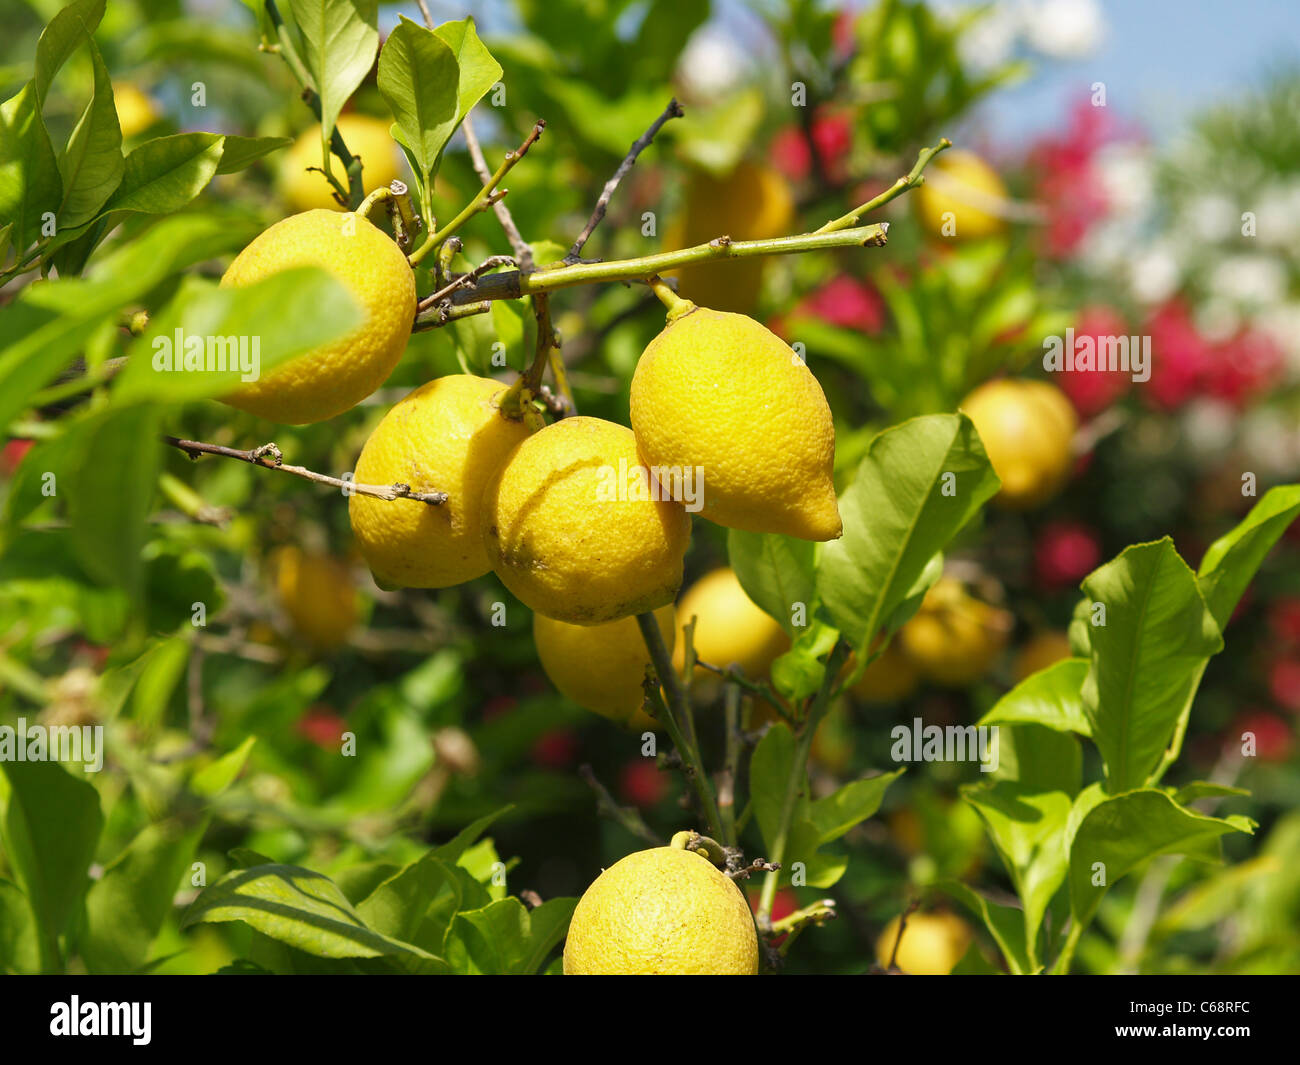 Zitronen haengen am Baum | lemons on the tree Stock Photo